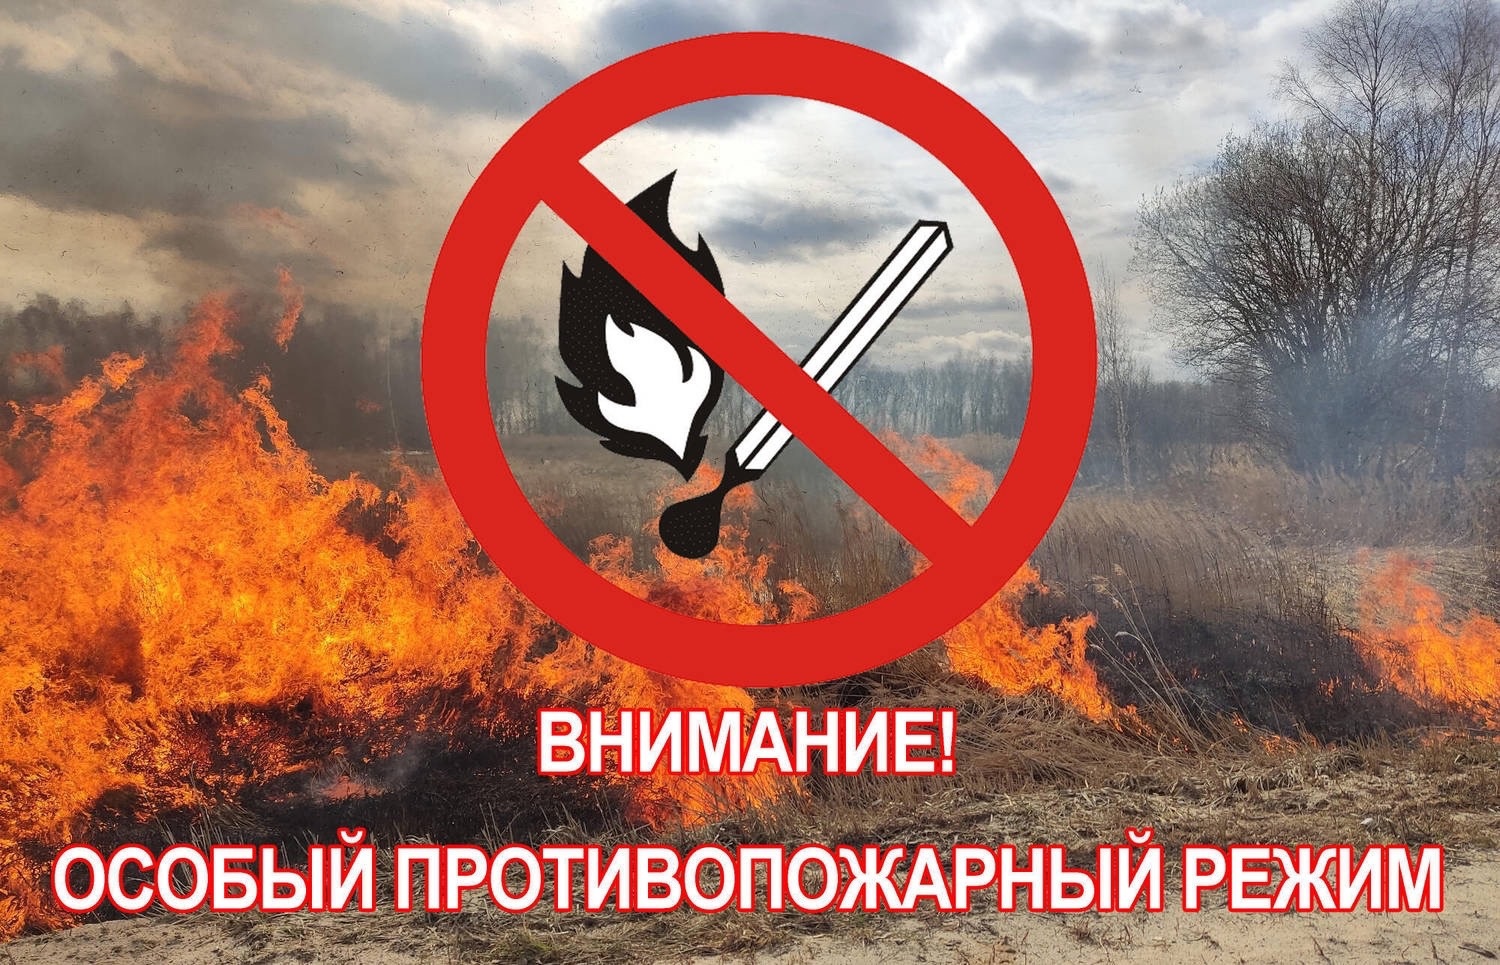 Уважаемые жители Нюксенского округа , с 15 апреля на территории Вологодской области объявлен особый противопожарный режим.